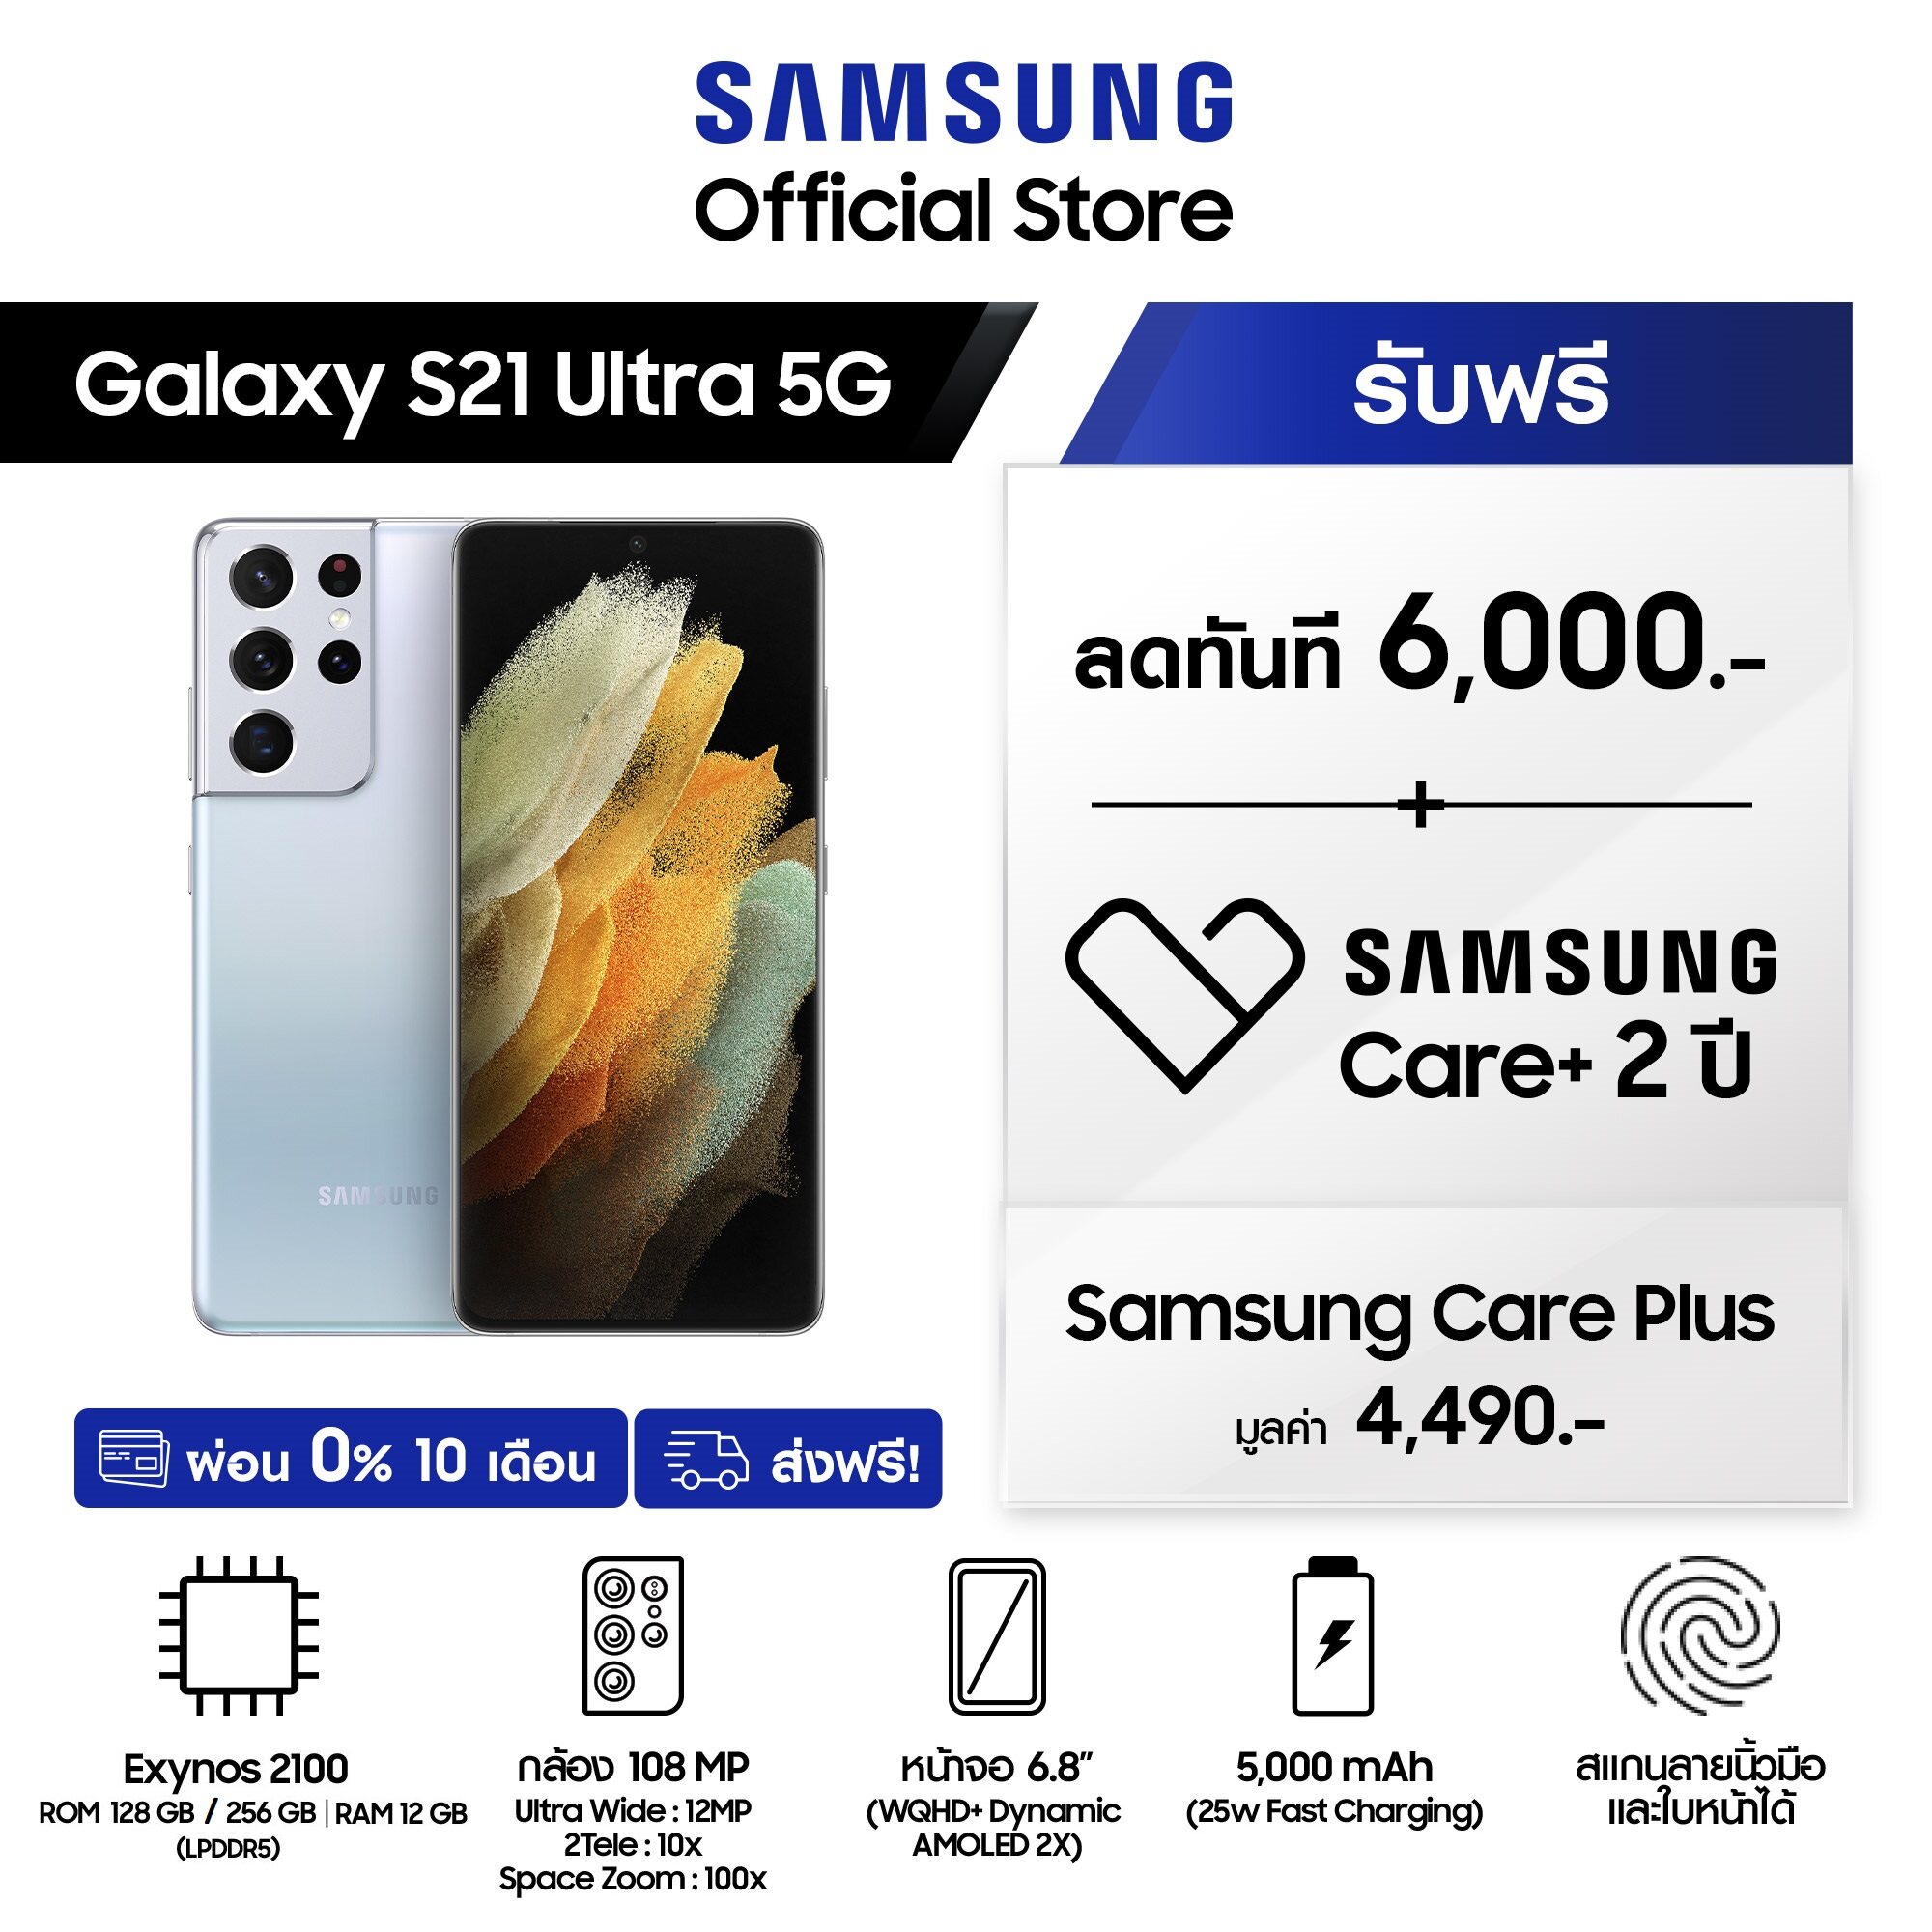 Samsung Galaxy S21 Ultra 5G (Ram 12GB)